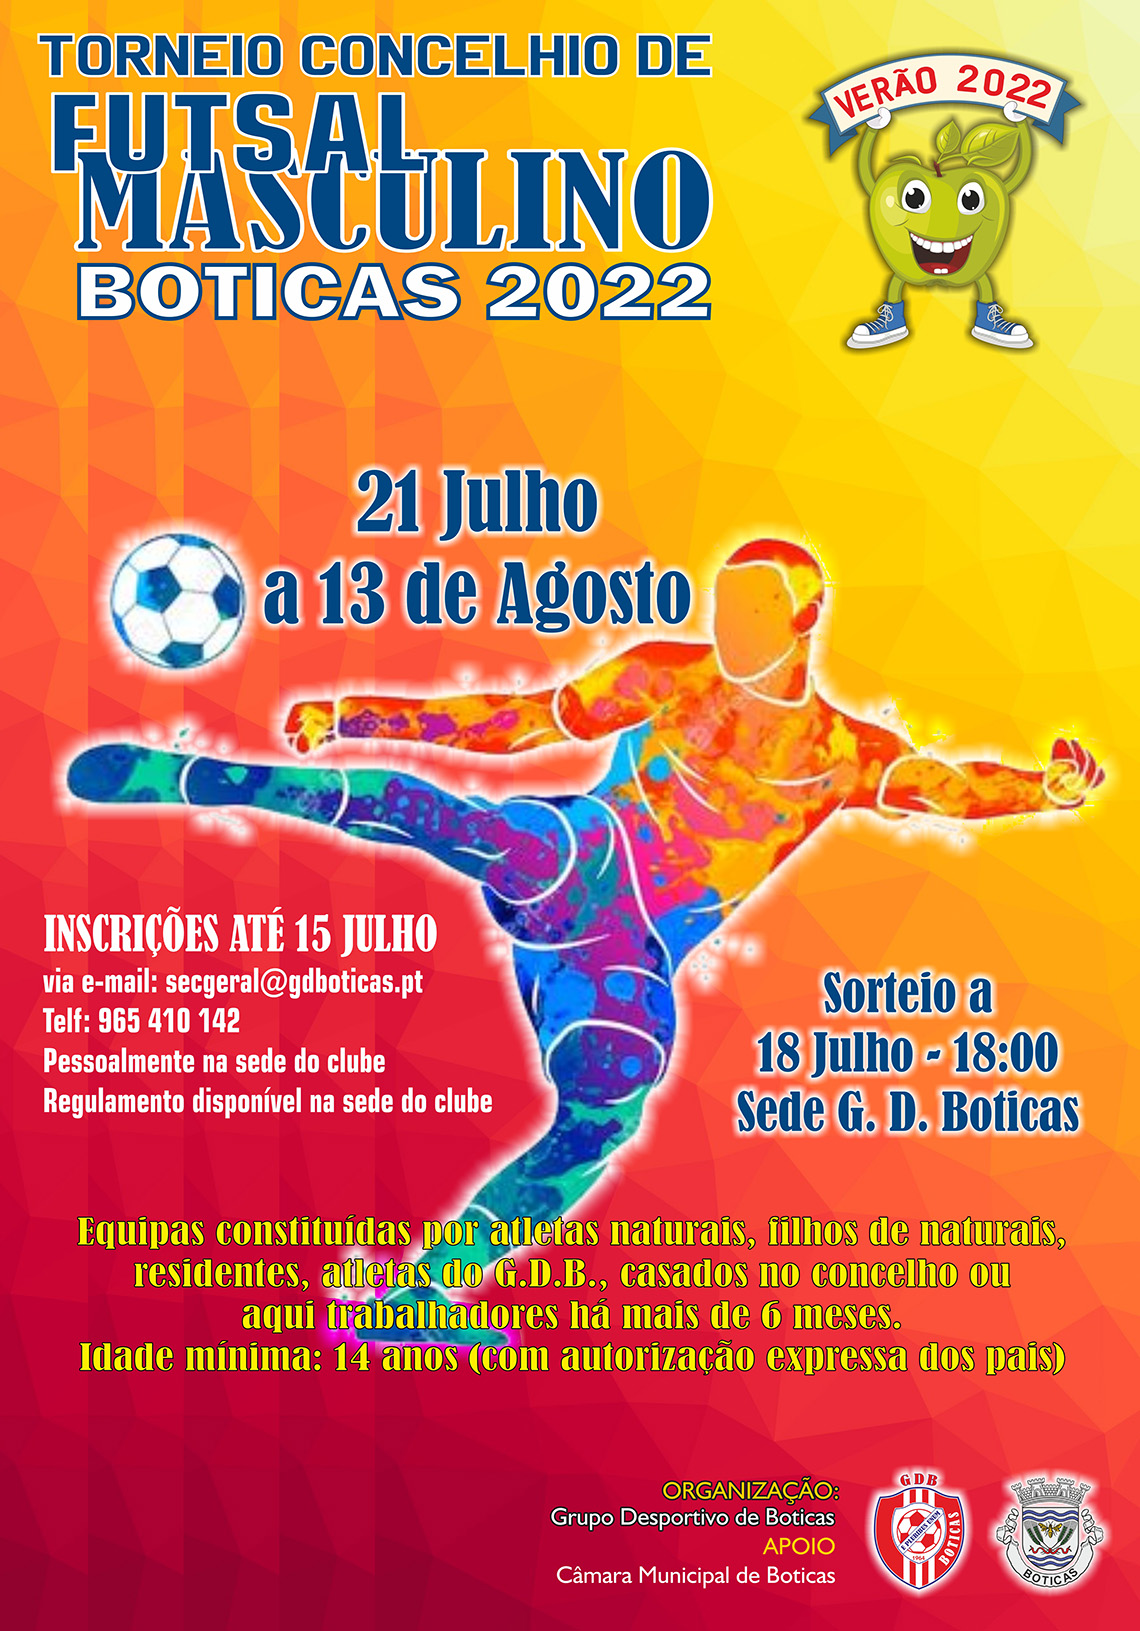 Torneio Concelhio de Futsal Masculino 2022